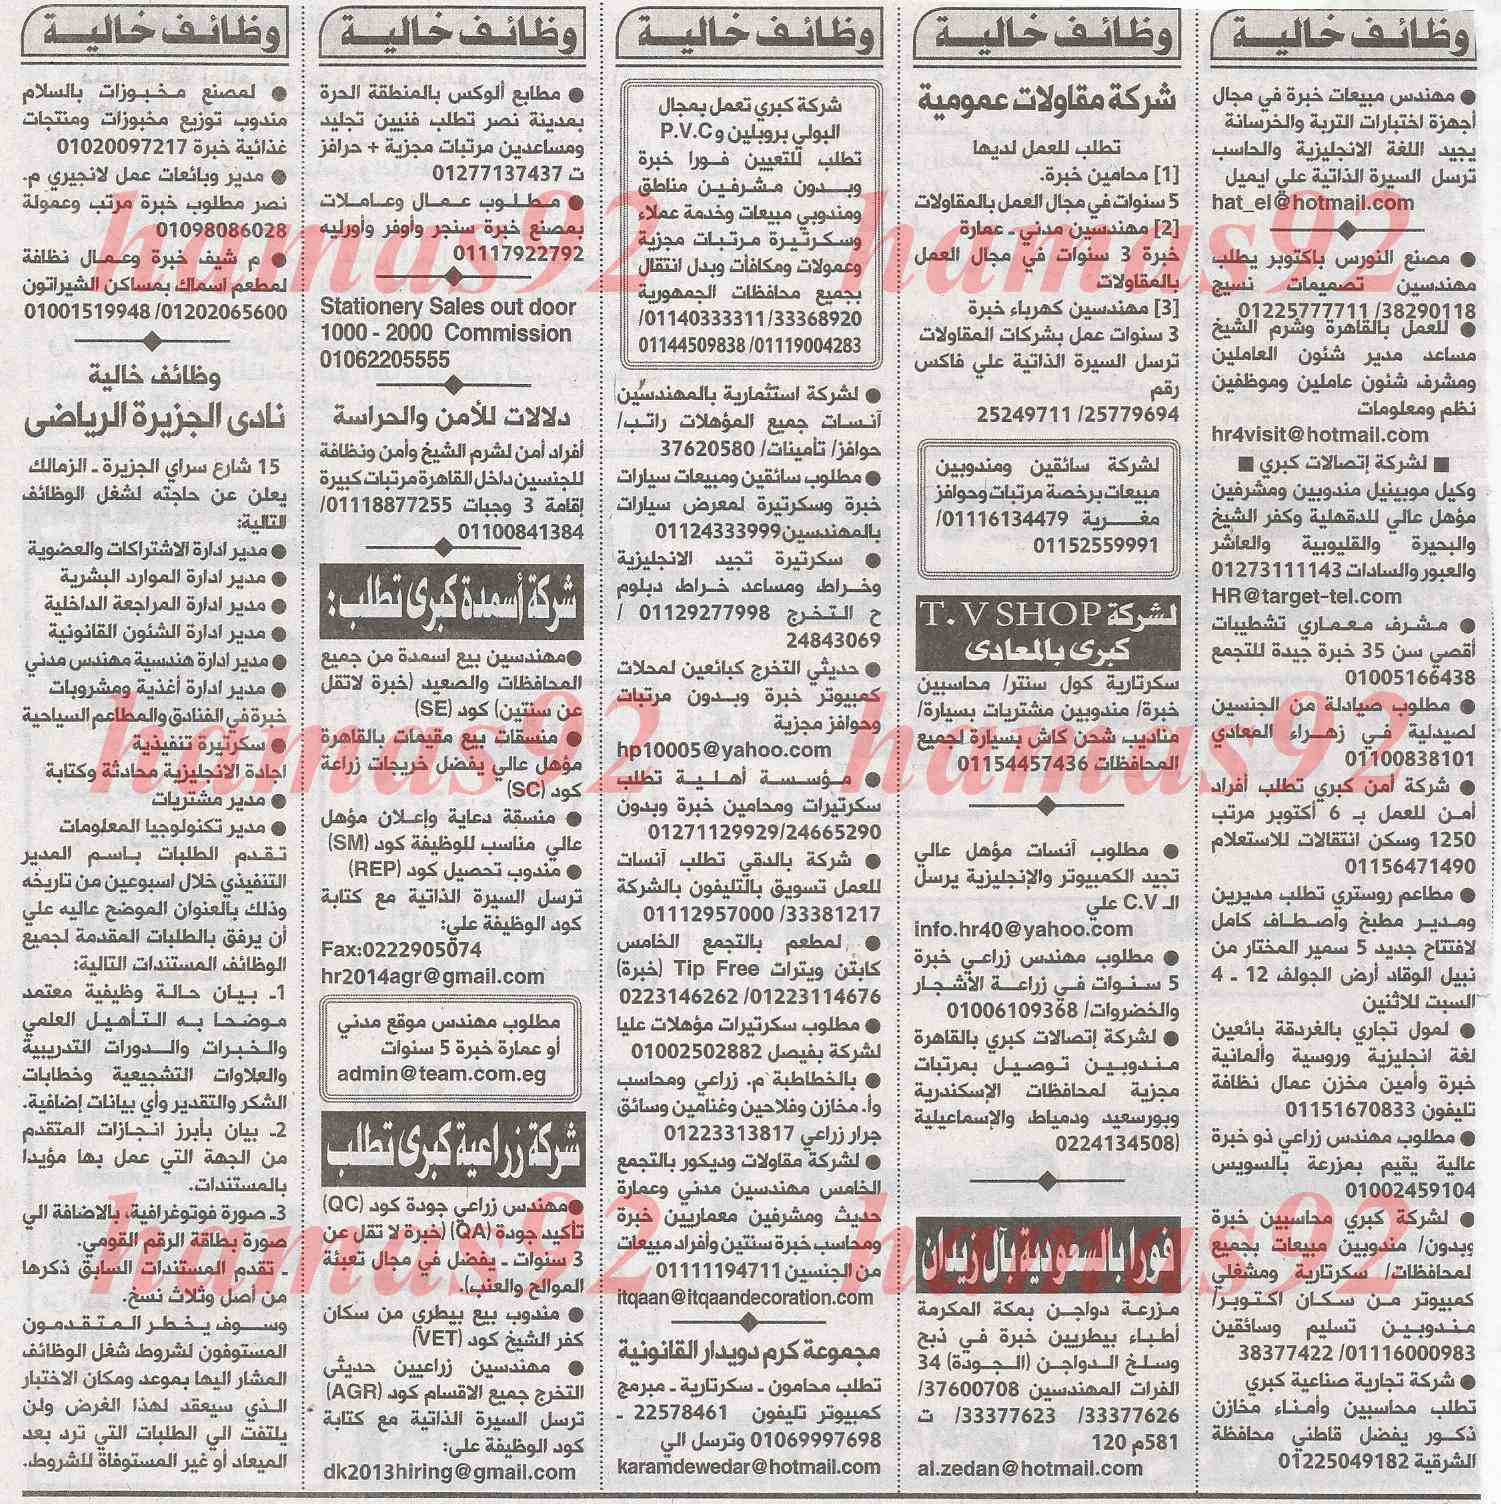 وظائف خالية اليوم السبت 22 شباط 2014 , وظائف جريدة الاهرام يوم السبت 22/2/2014